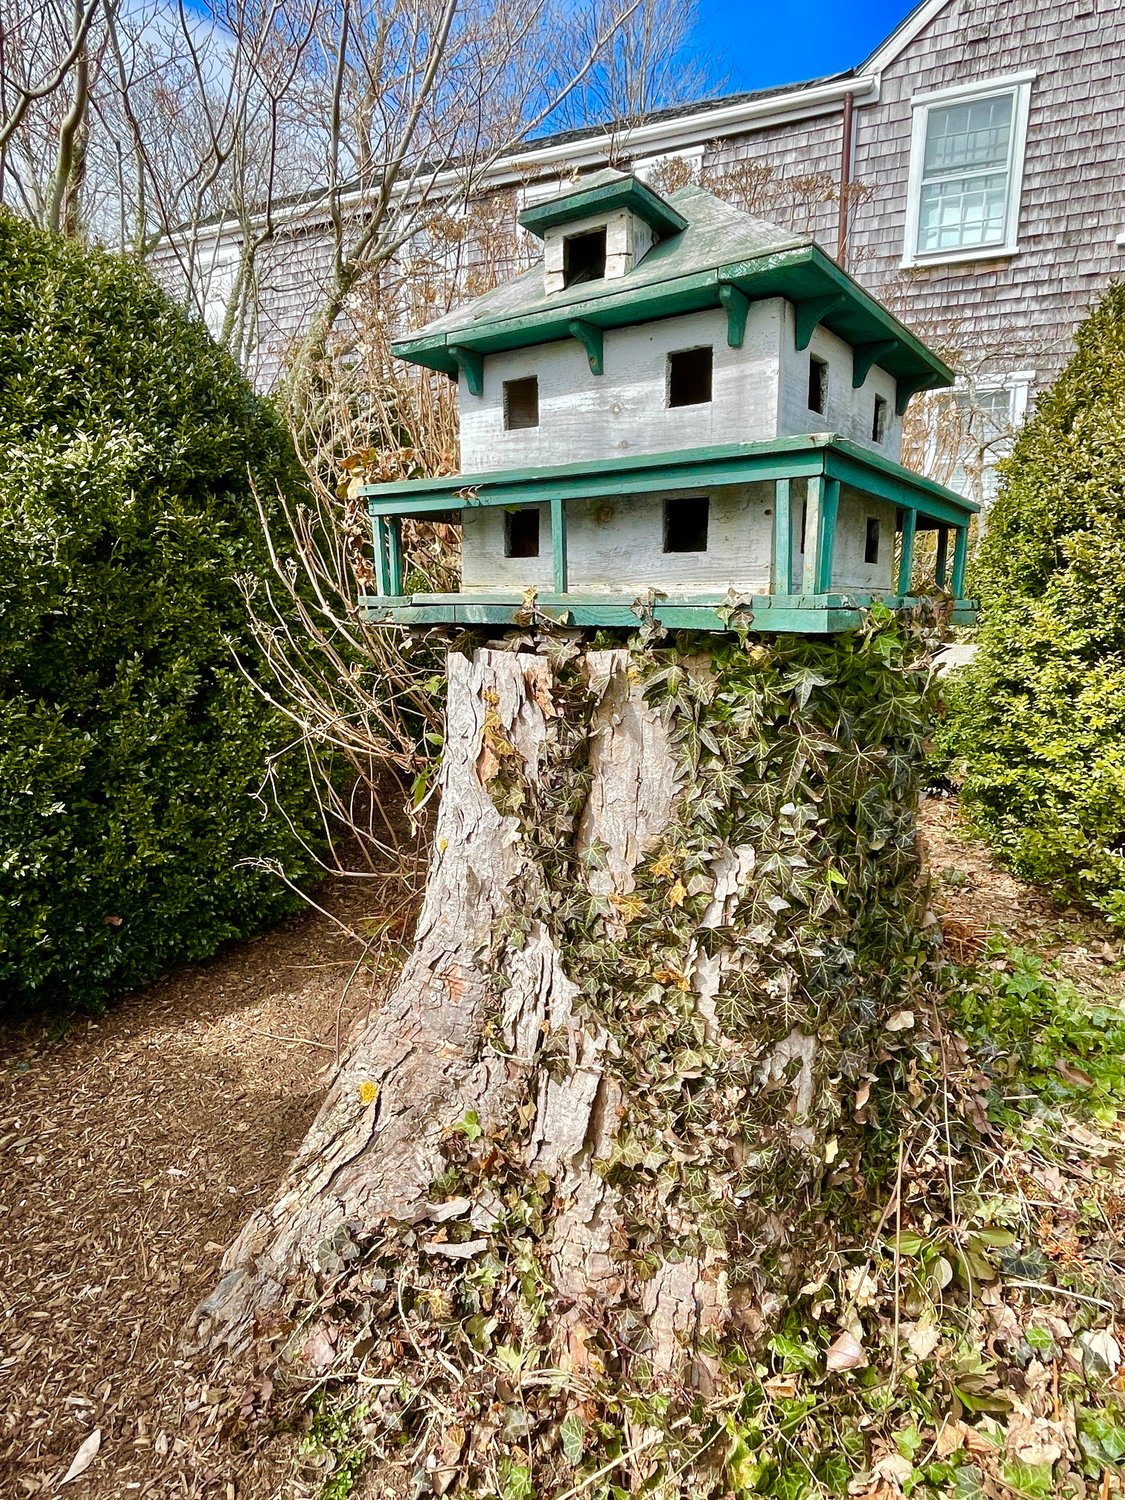 A birdhouse ready for occupants.